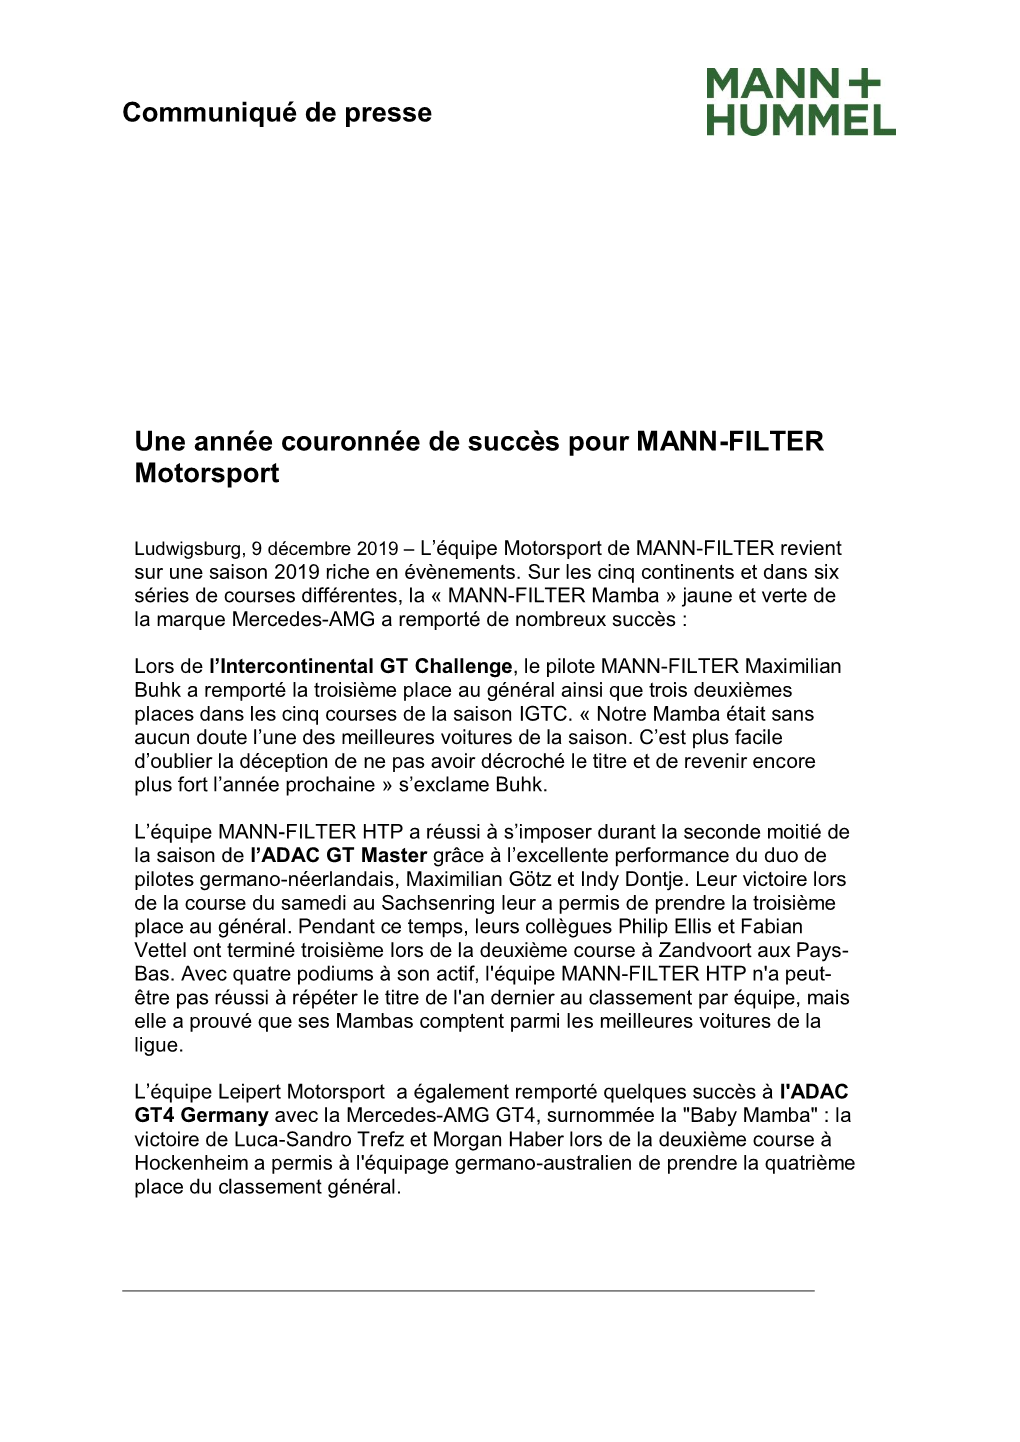 Communiqué De Presse Une Année Couronnée De Succès Pour MANN-FILTER Motorsport